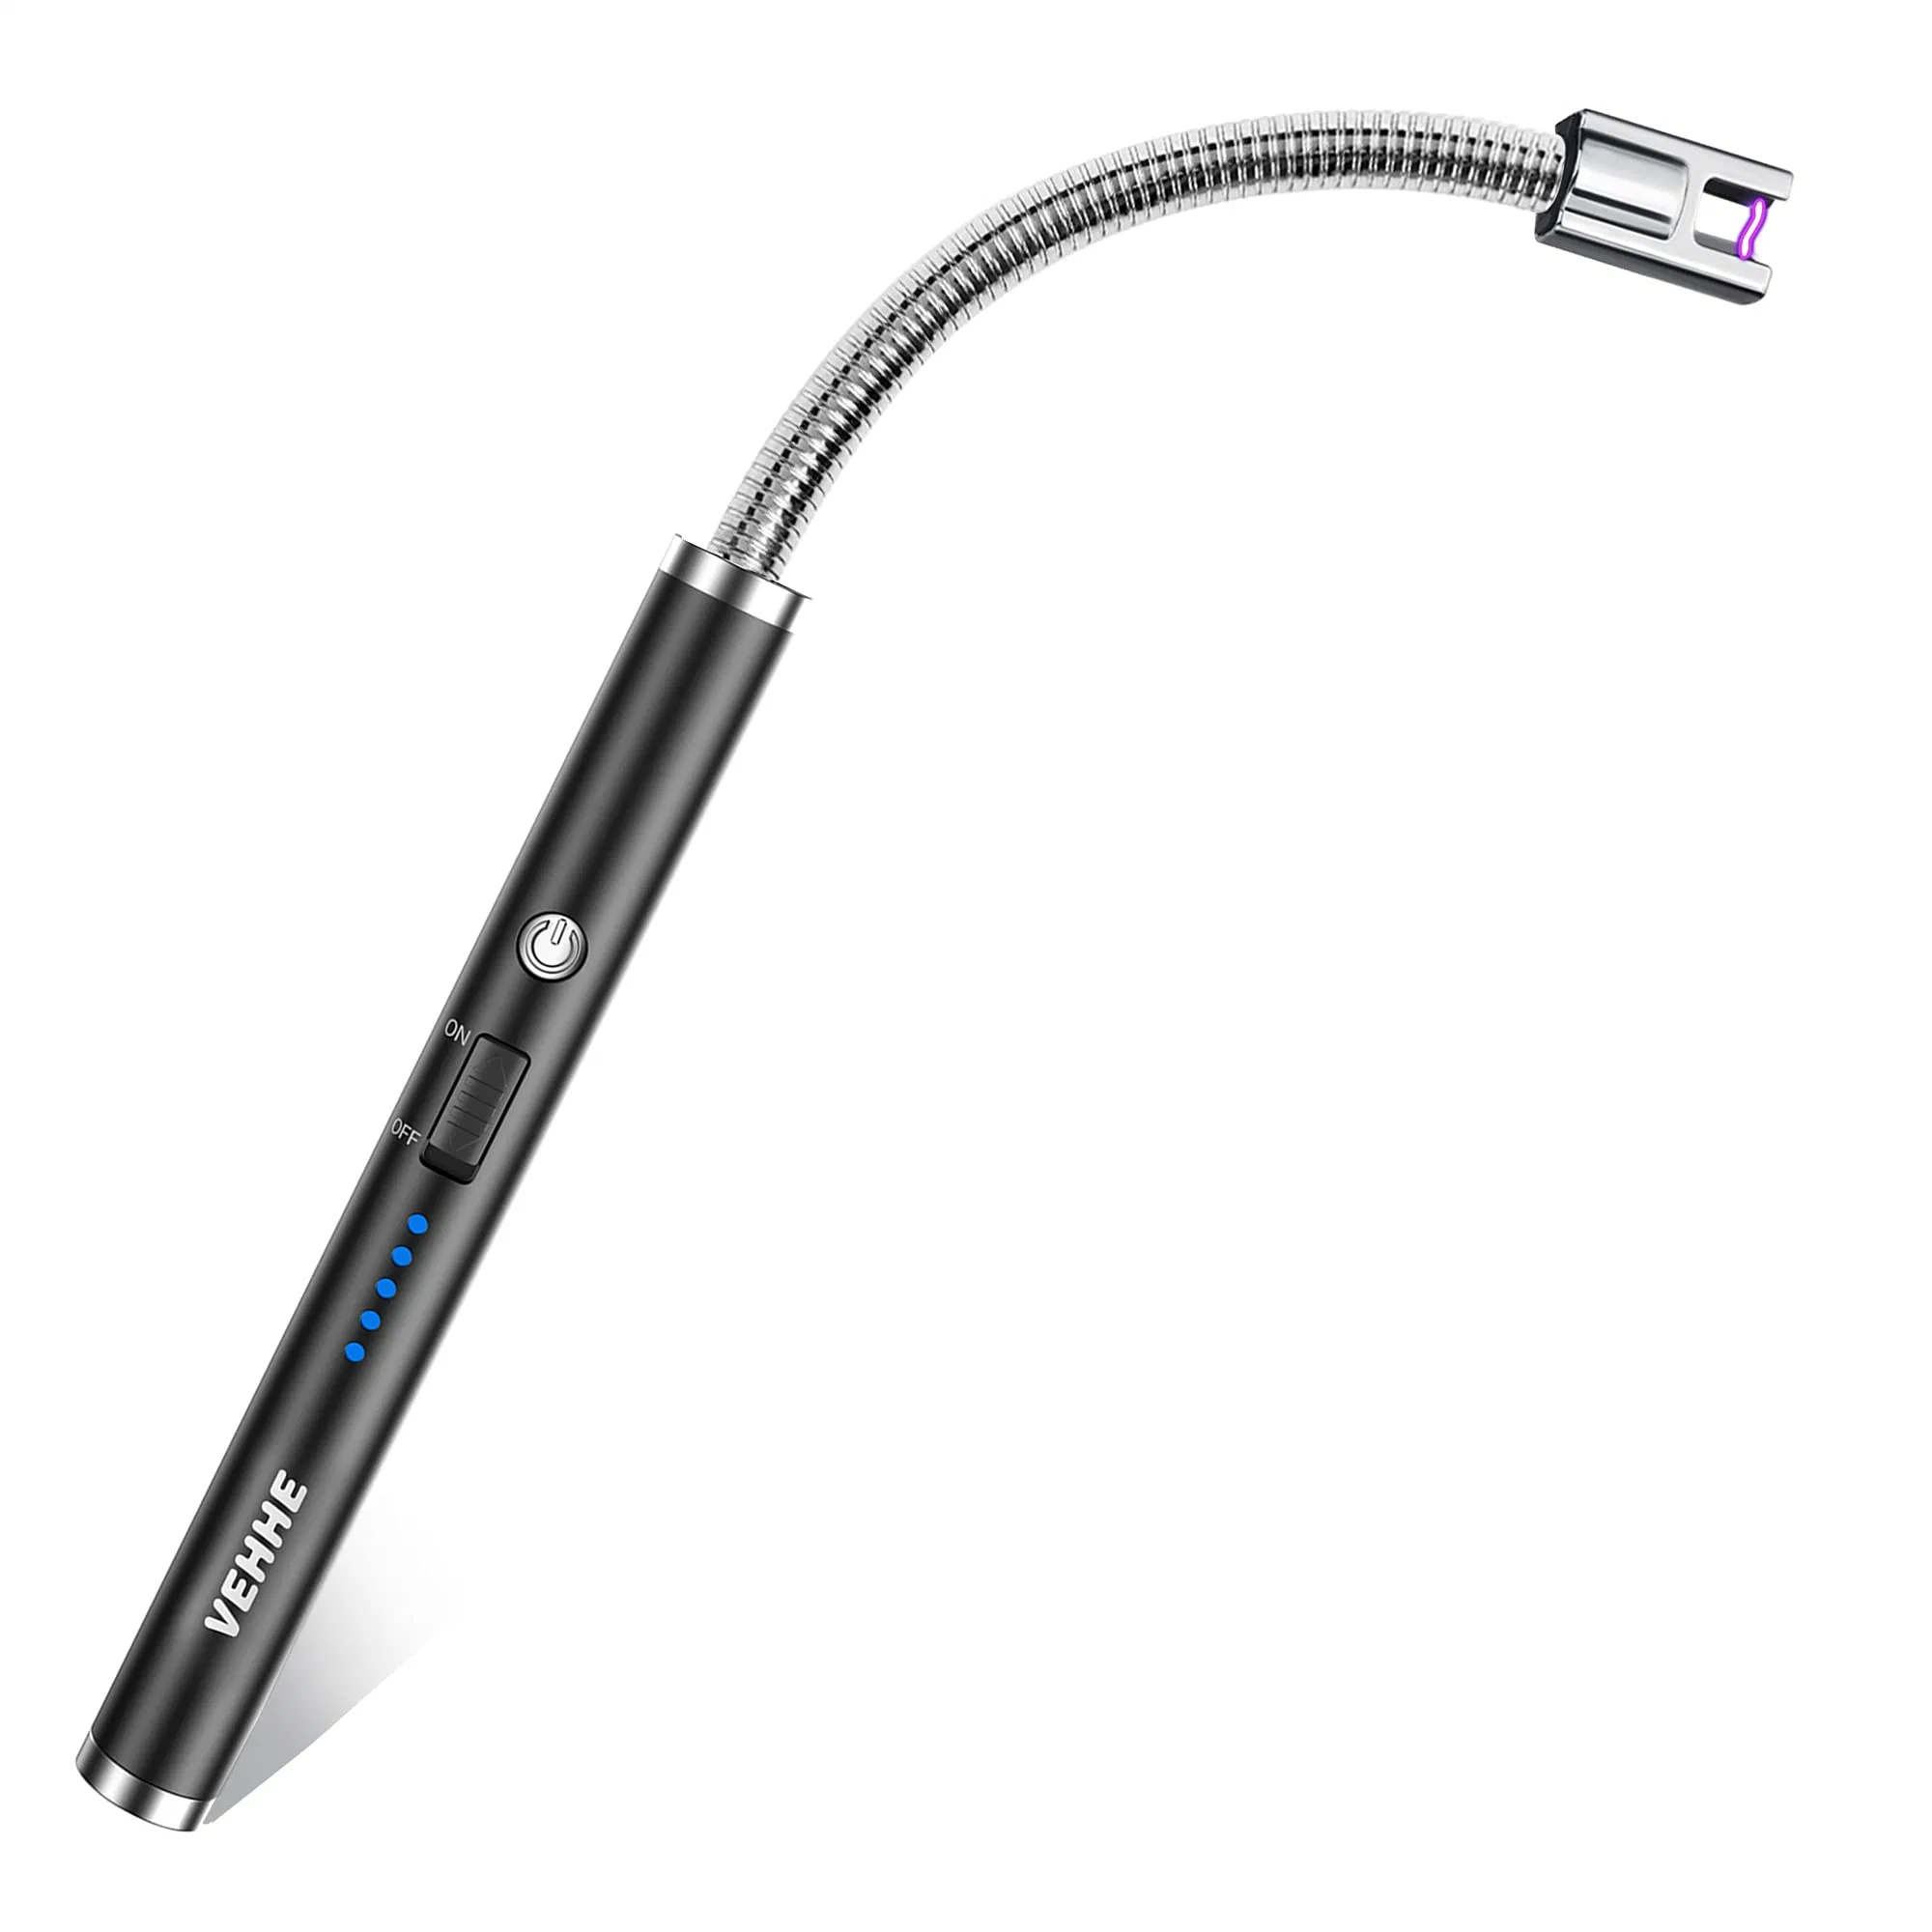 Свеча светлее, электрические аккумуляторные Arc легче с светодиодный индикатор заряда аккумулятора на дисплее гибкого горловины для прикуривателя USB лампа в форме свечи газовых плит в походах барбекю